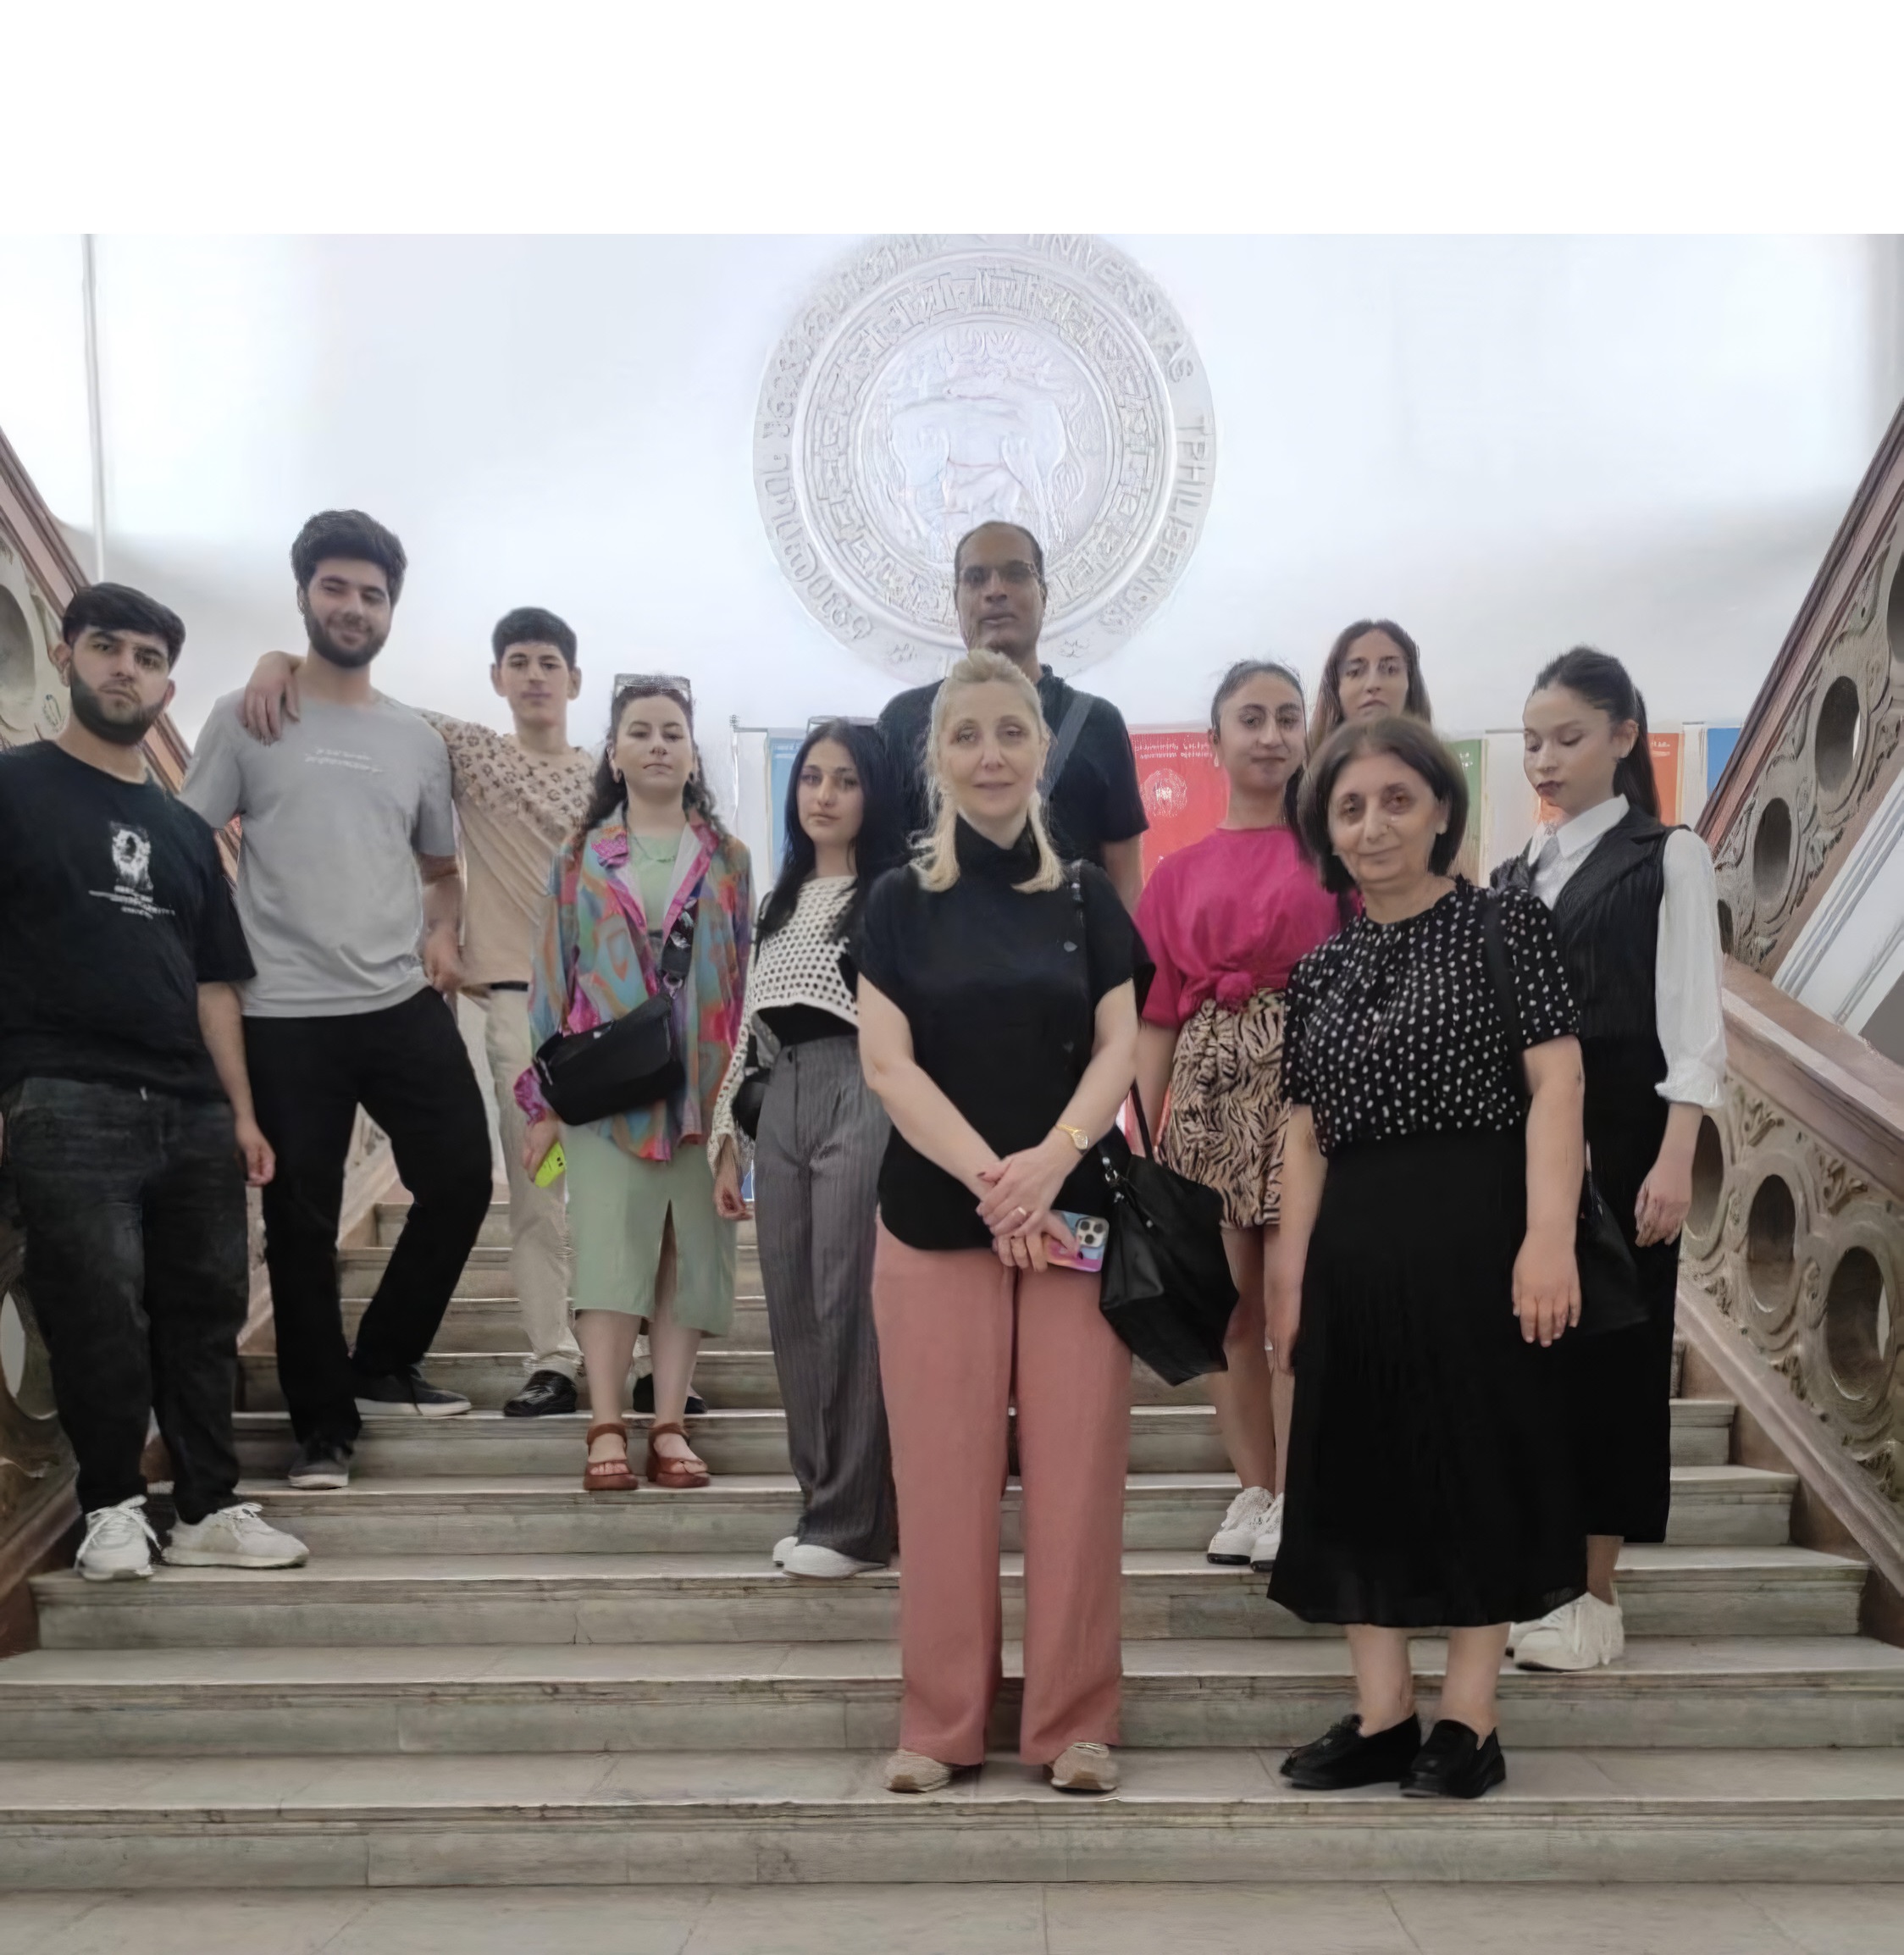 ქართულ ენაში მომზადების საგანმანათლებლო პროგრამის სტუდენტები სტუმრად თსუ მუზეუმში